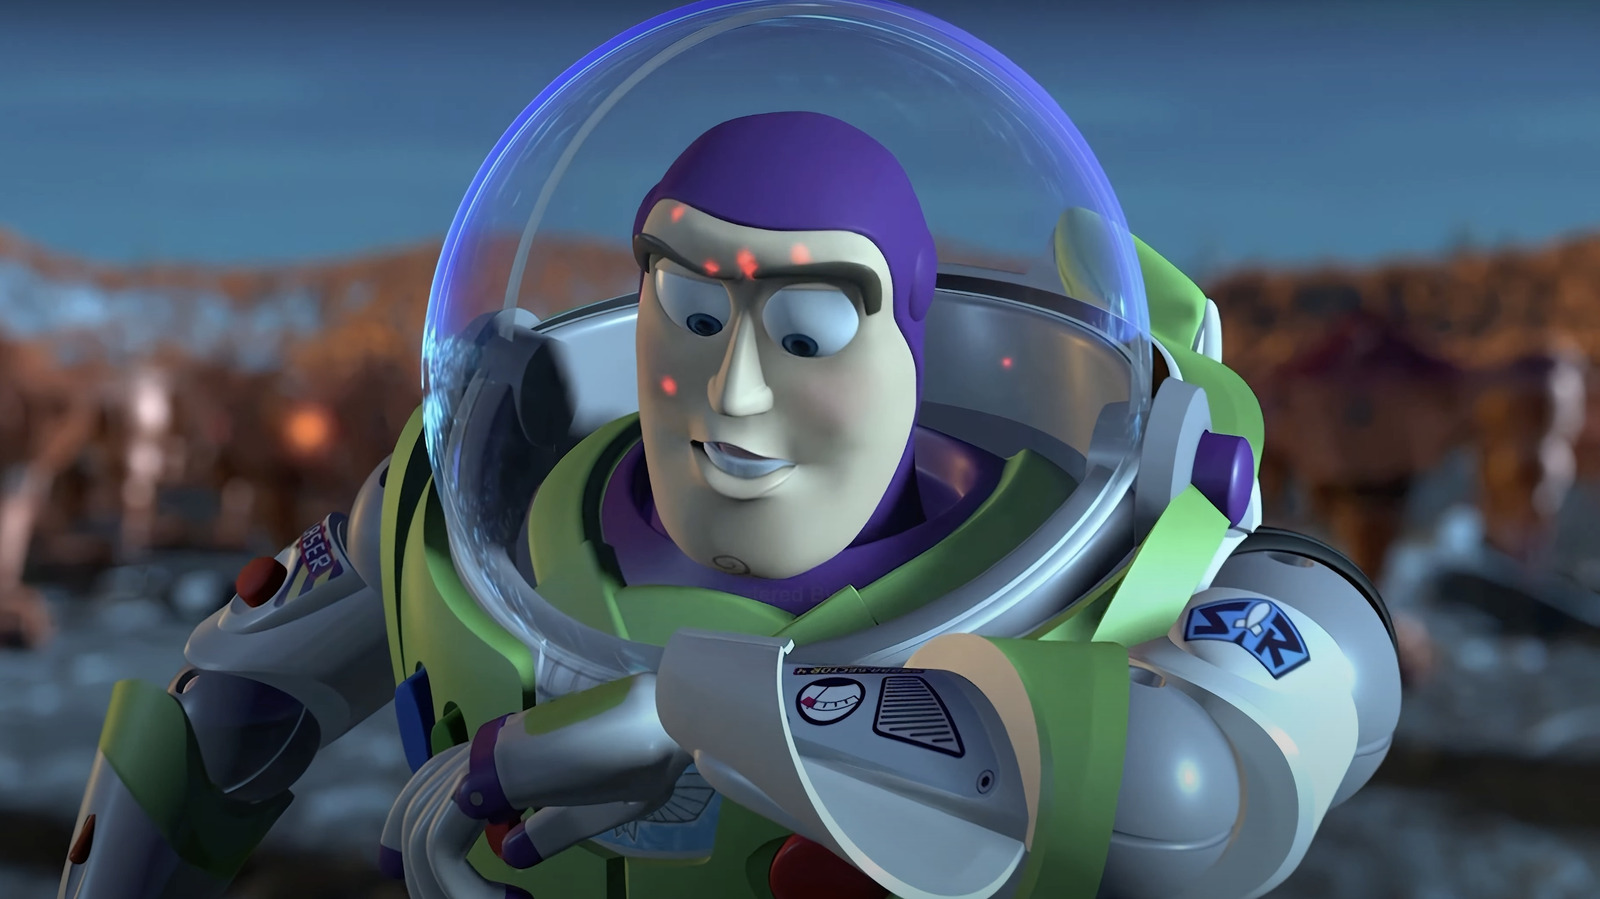 A ideia de Toy Story 5 de Tim Allen é ótima (mas tornaria Toy